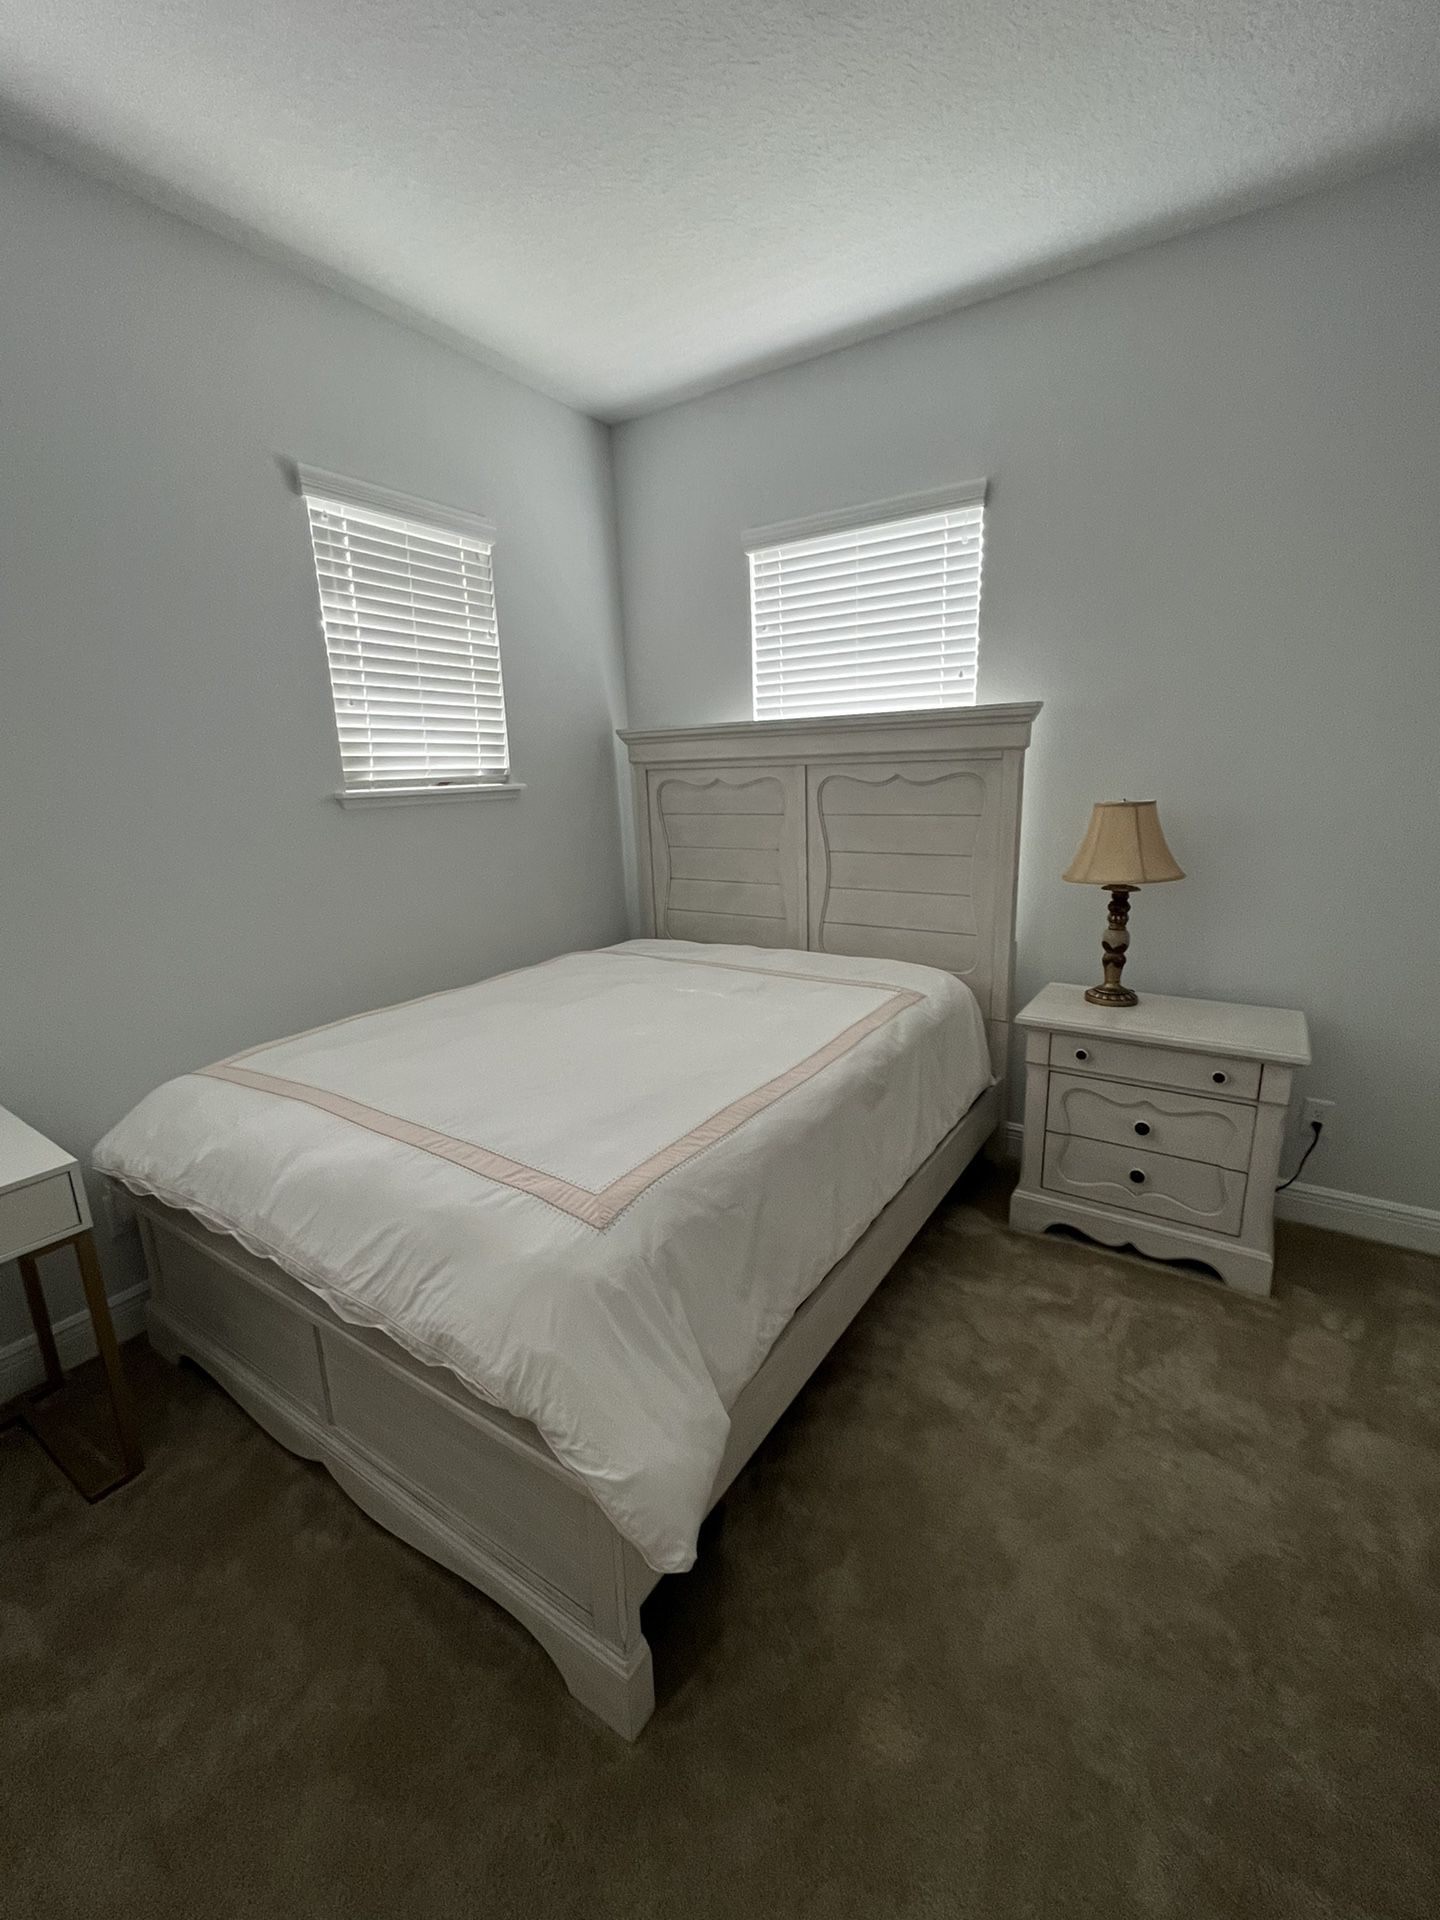 New Queen Bedroom Set $1250 OBO includes NEW queen sealy Mattress 